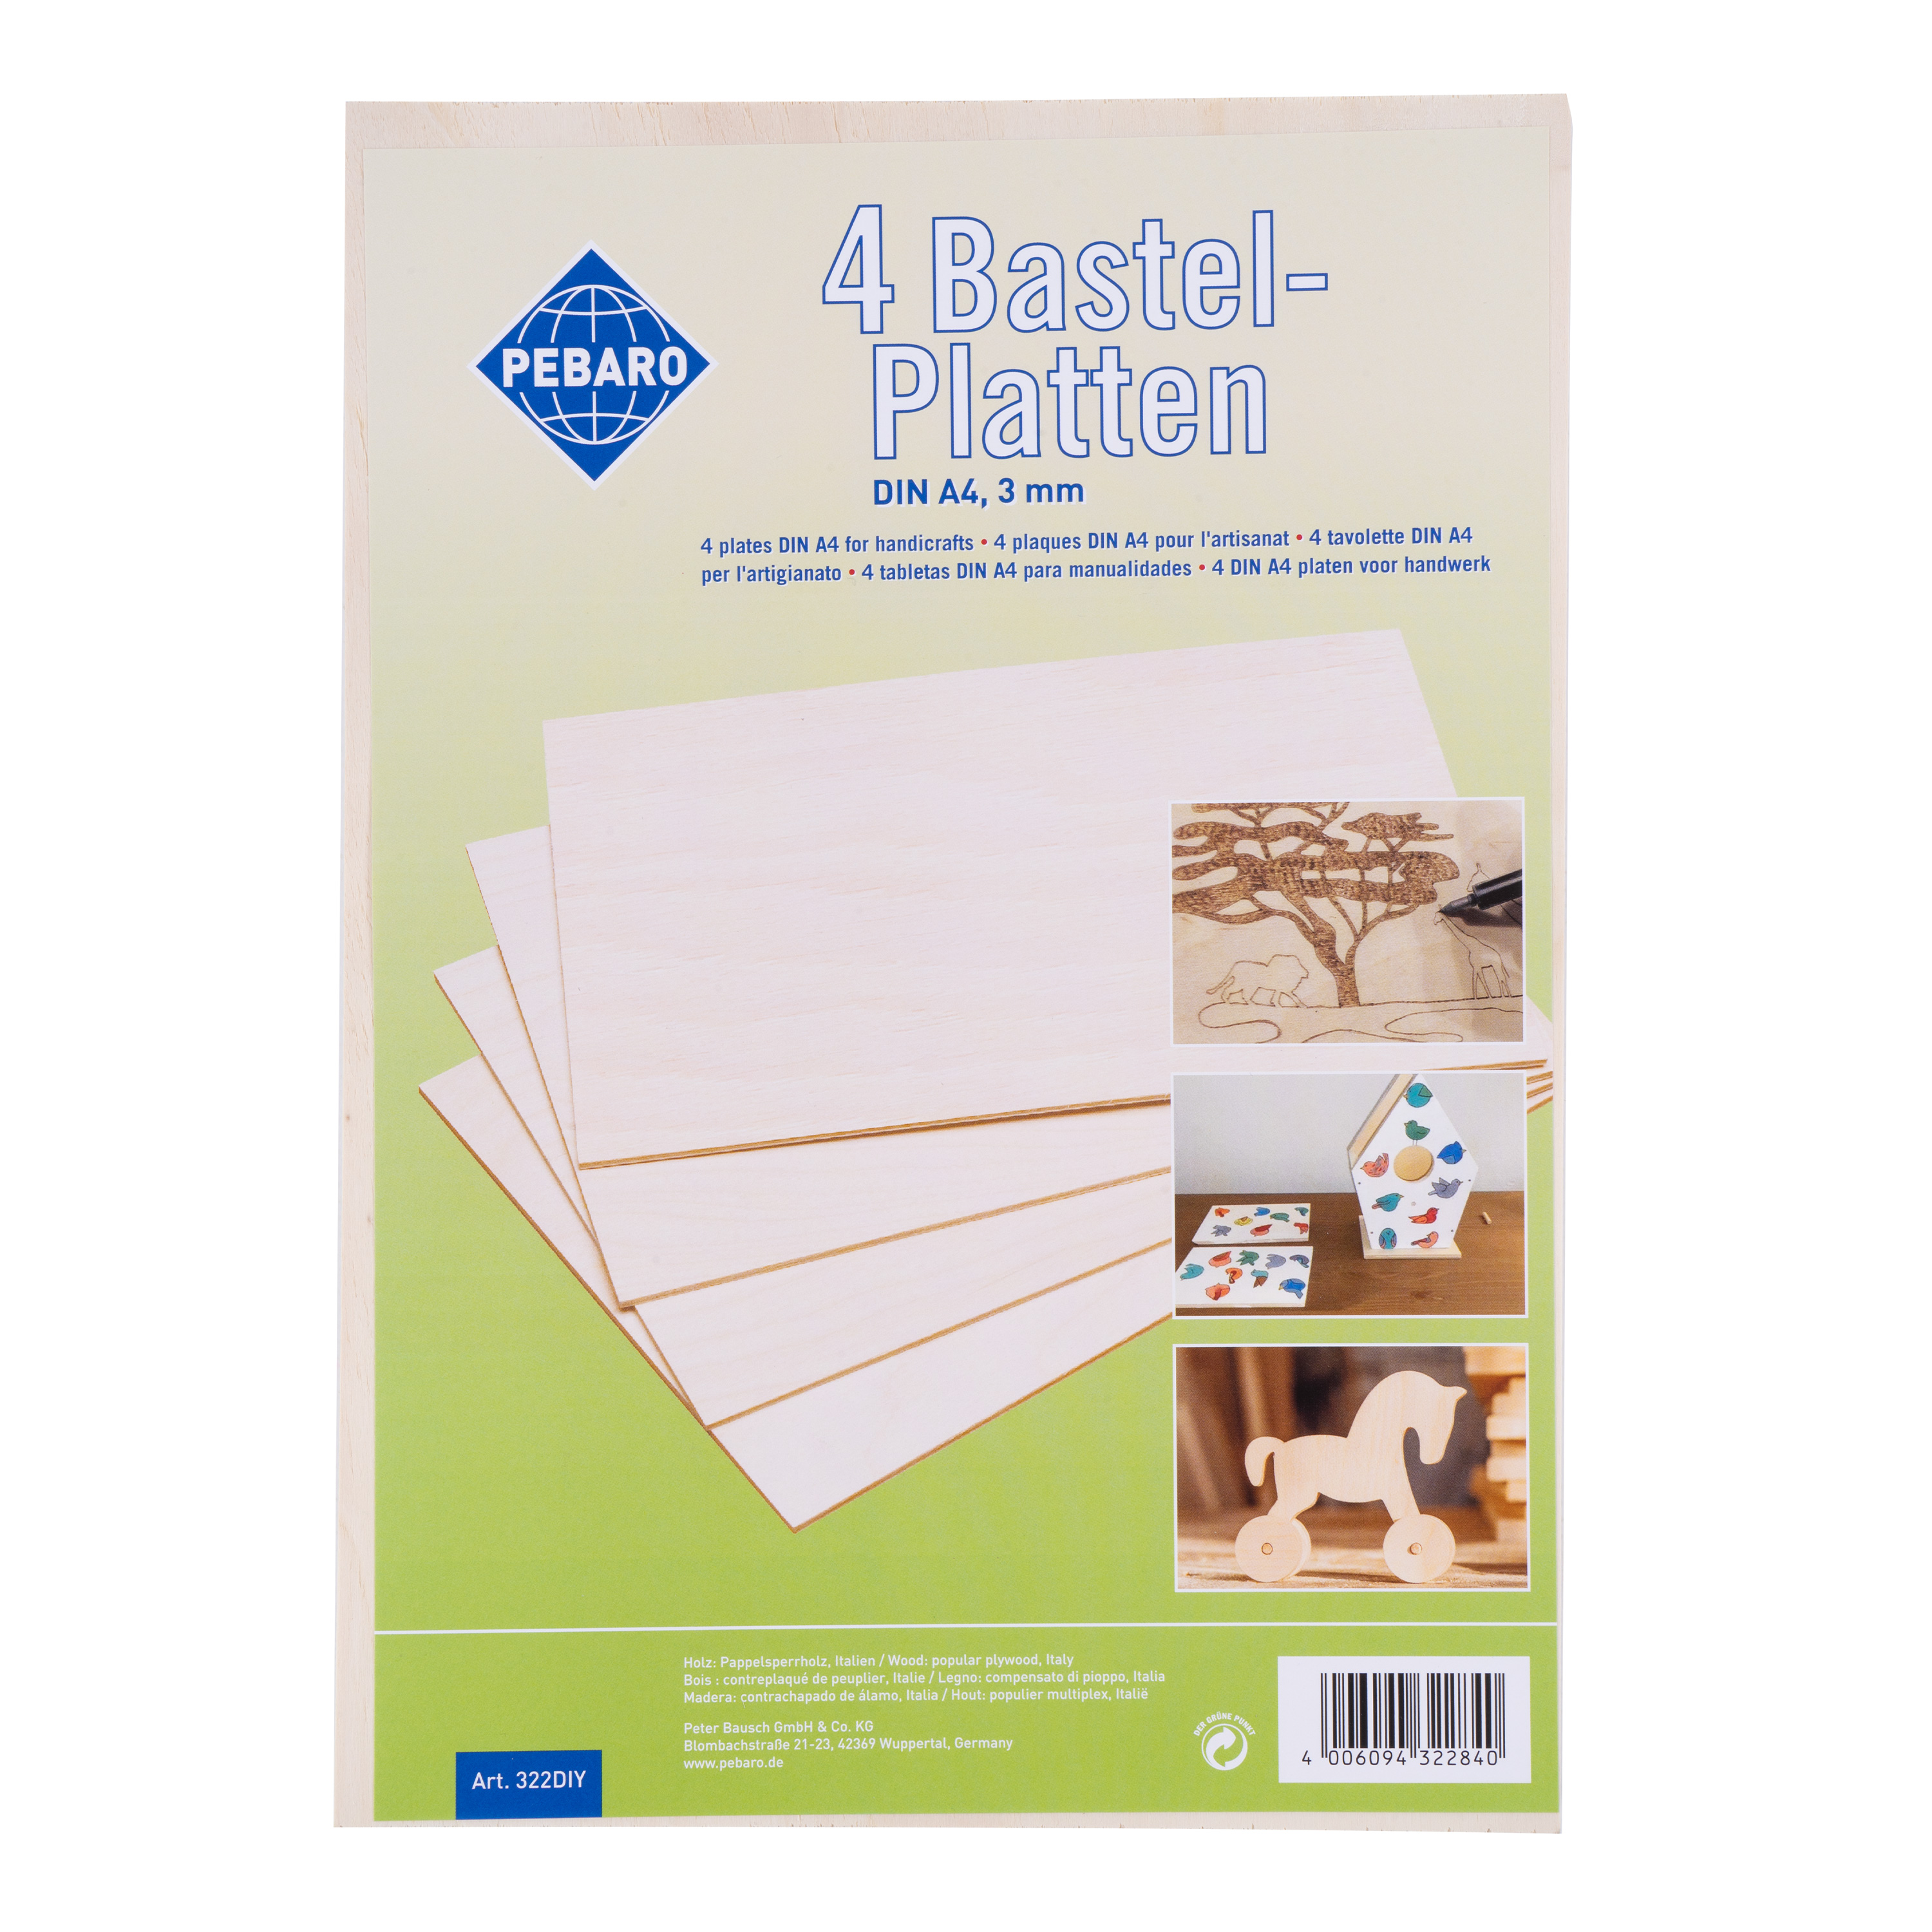 Pappel-Sperrholzplatten DIN A4-Format, 4 Stück